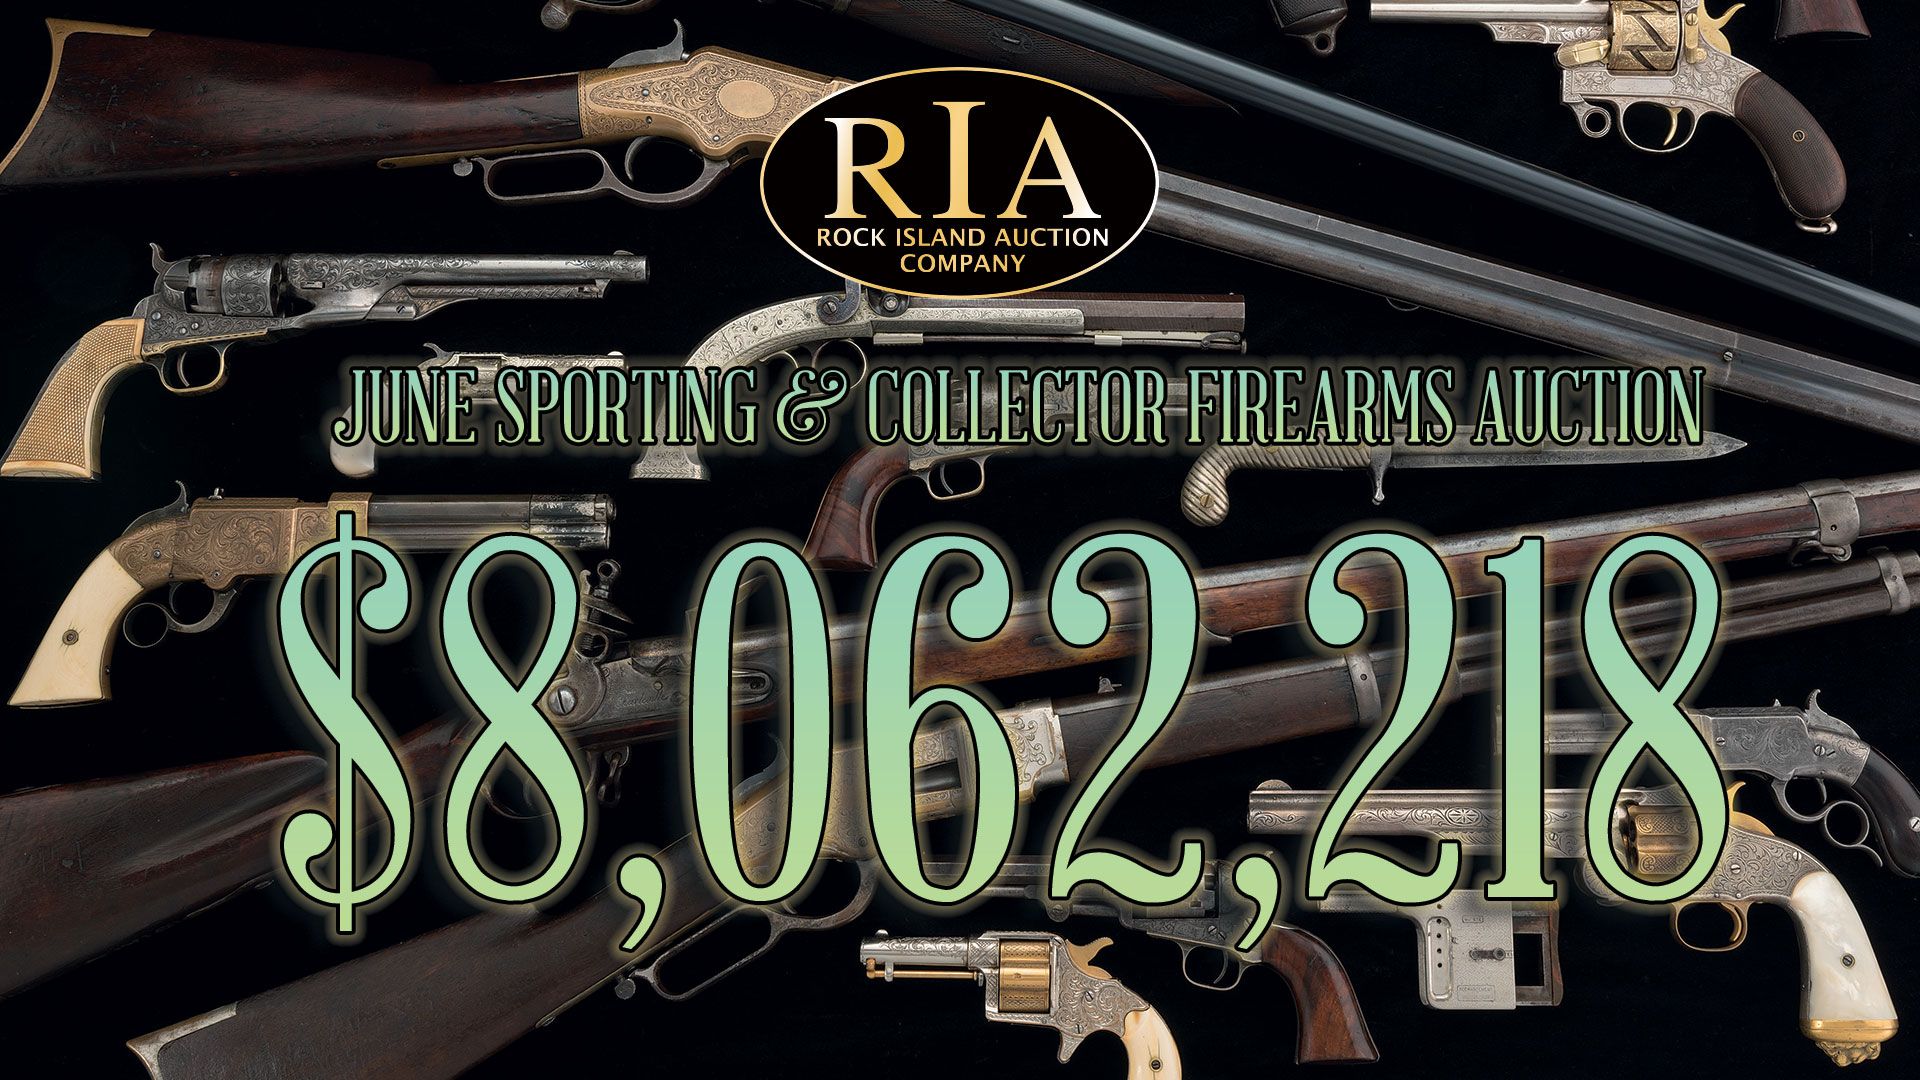 RIAC's June S&C Firearms Auction realizes over $8 Million!